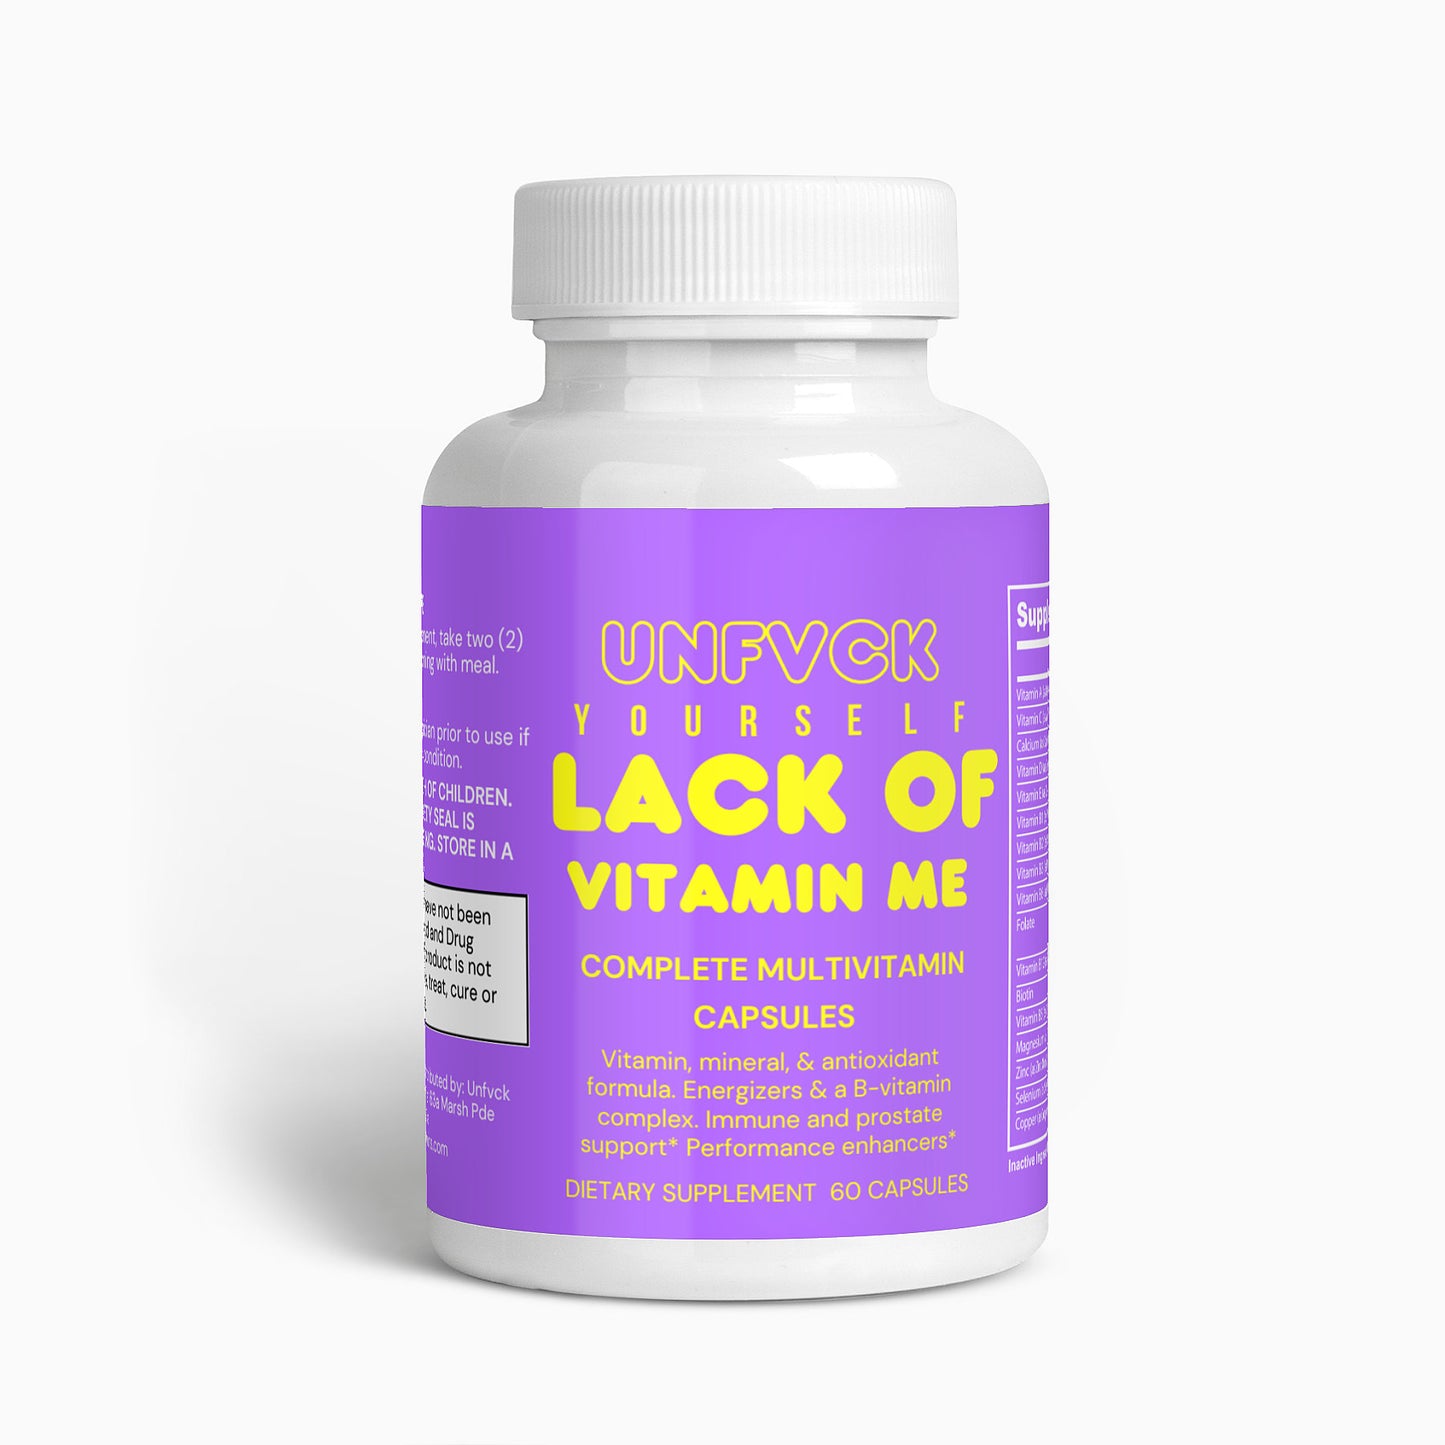 LACK OF VITAMIN ME - Complete Multivitamin